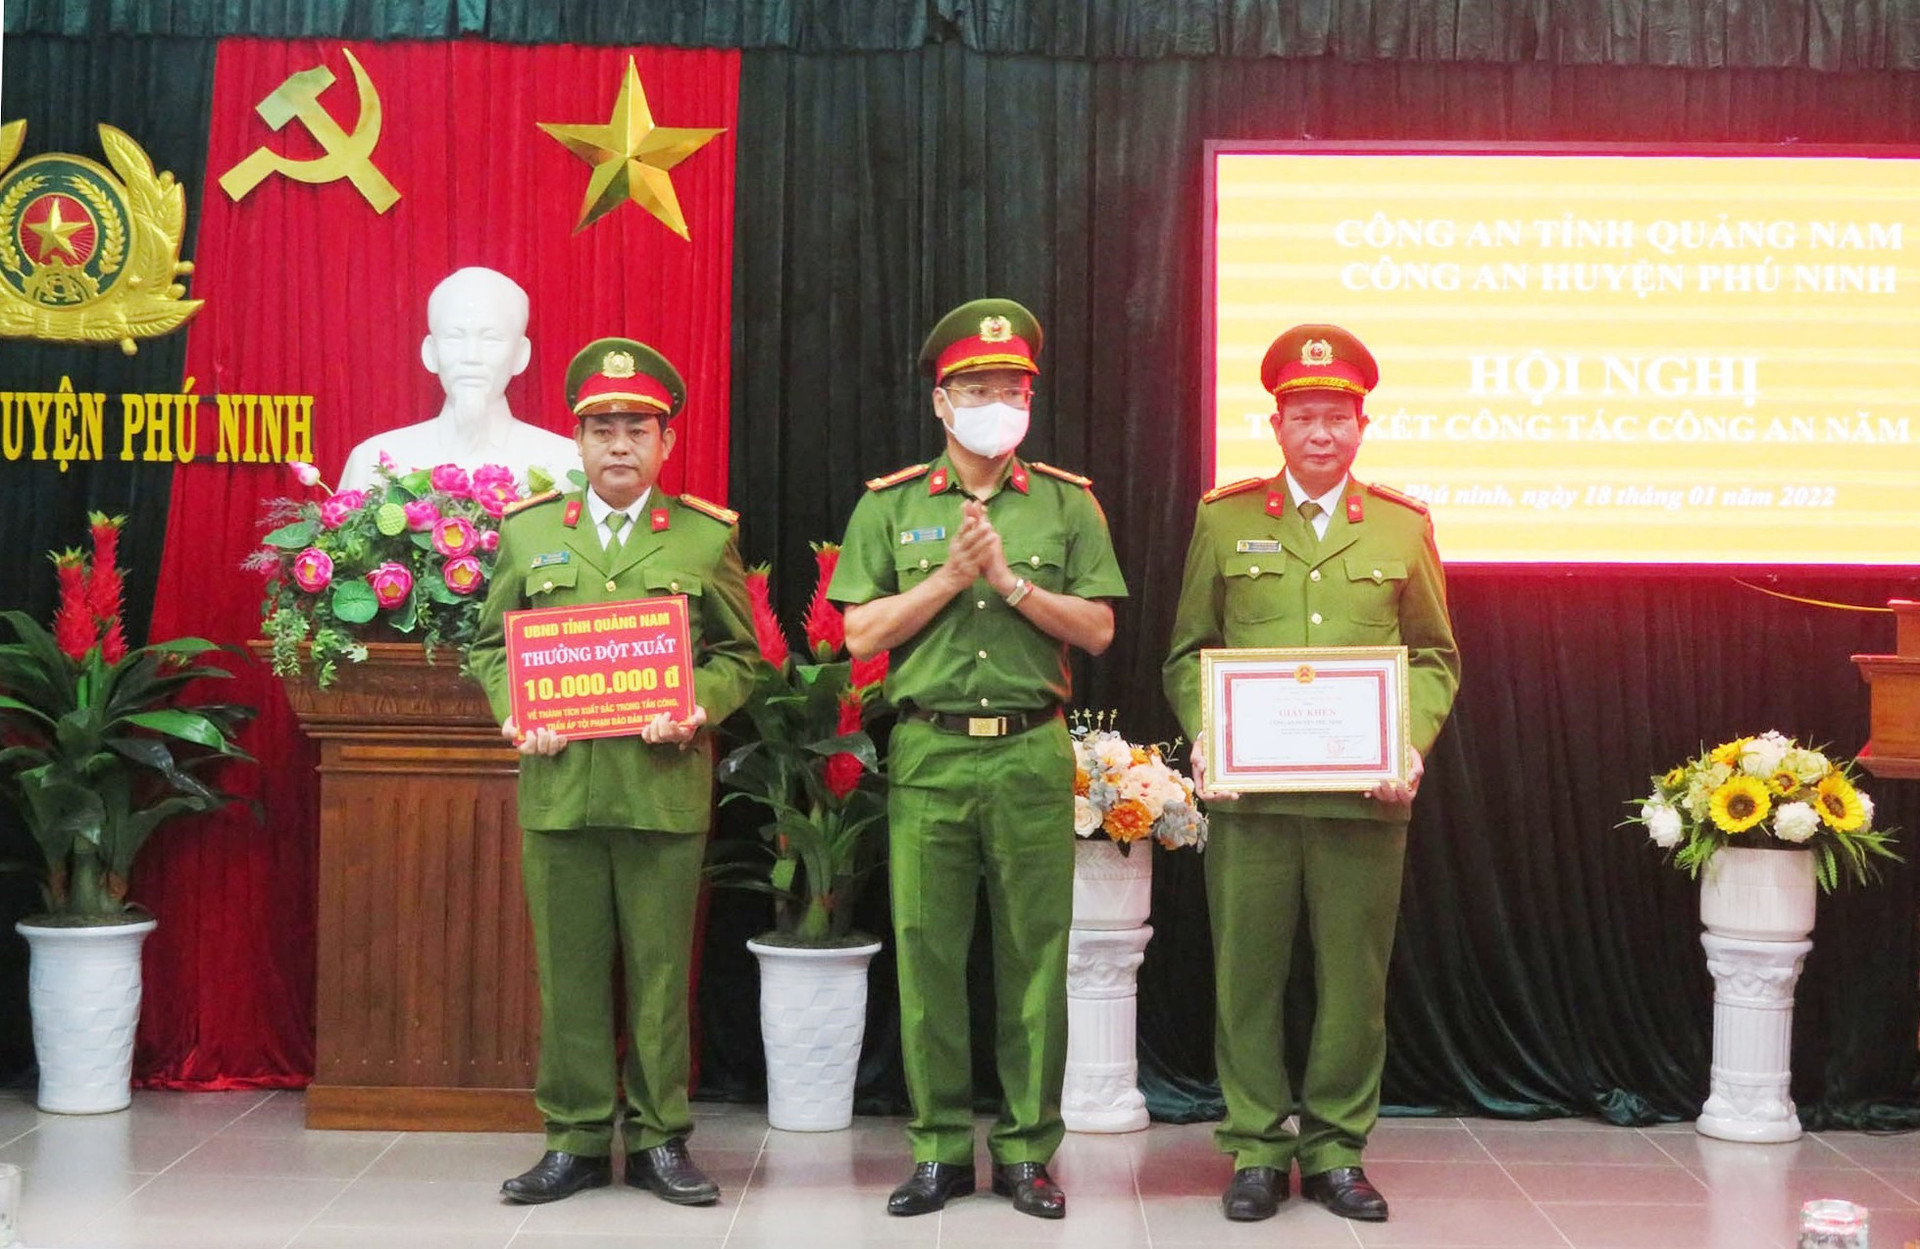 Đại tá Hồ Song Ân - Phó Giám đốc Công an tỉnh trao giấy khen cho tập thể Công an huyện Phú Ninh. Ảnh: C.Đ